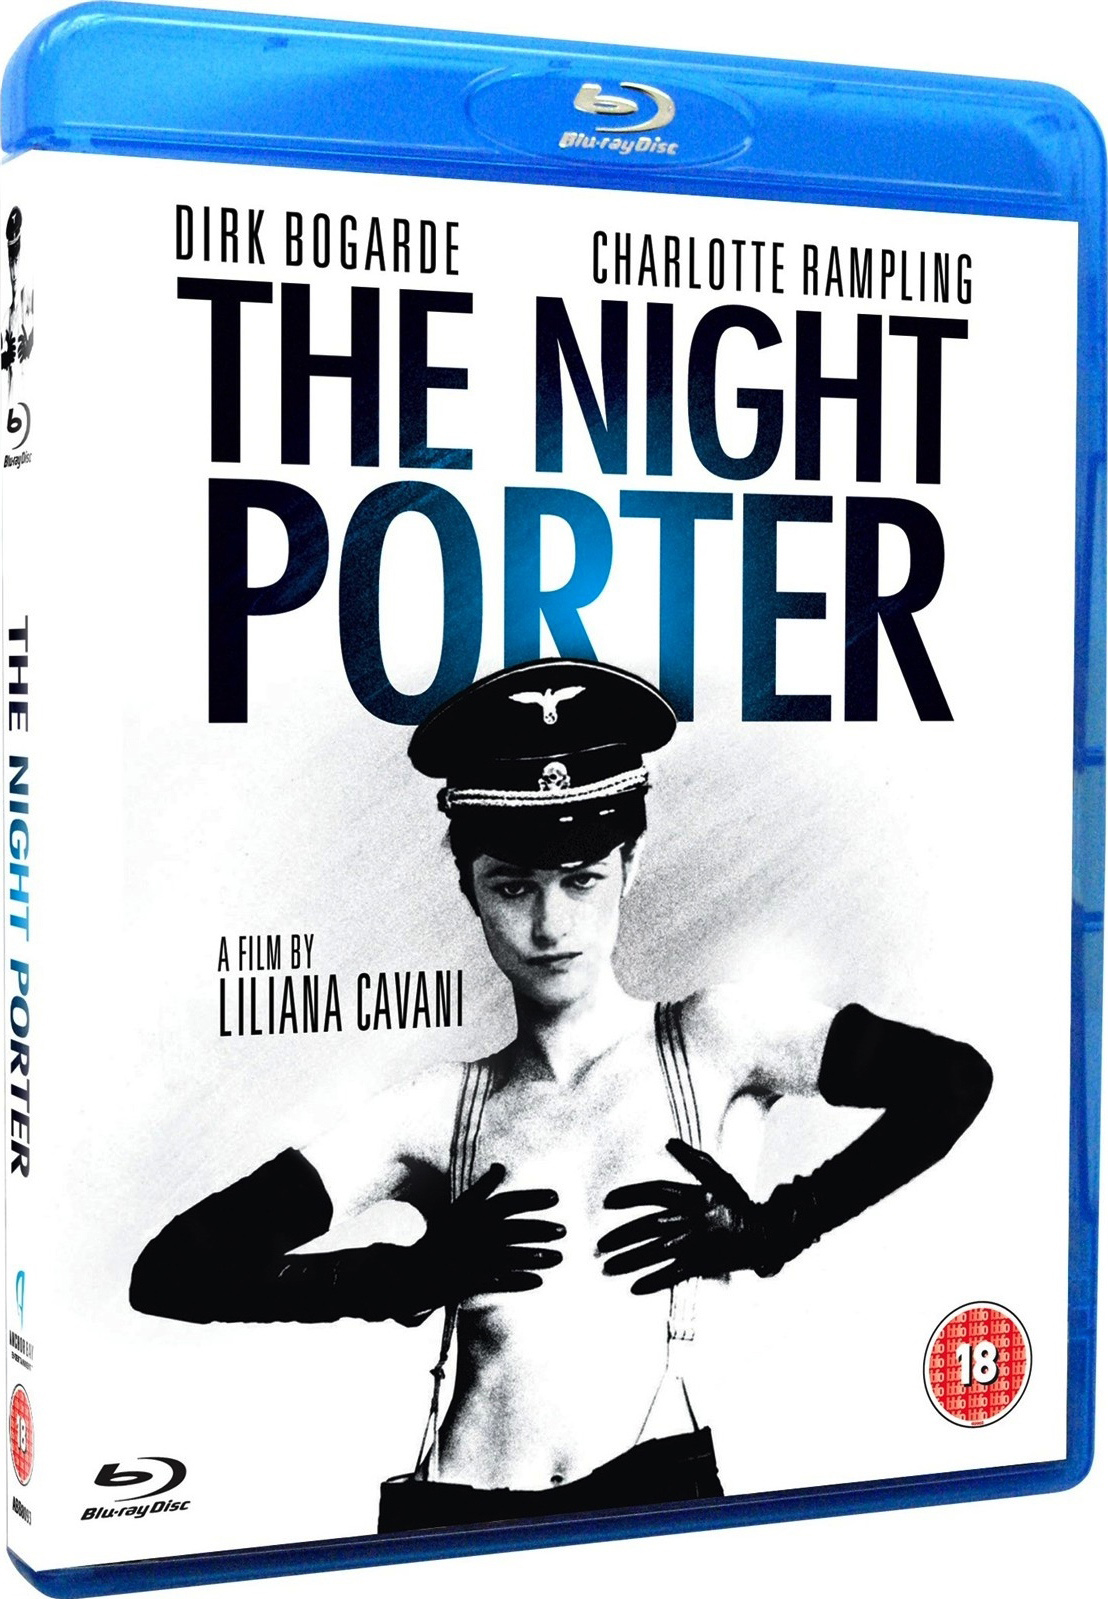 [午夜守门人].The.Night.Porter.1974.CC.BluRay.1080p.AVC.LPCM.1.0-why@CHDBits    40.95G-1.jpg